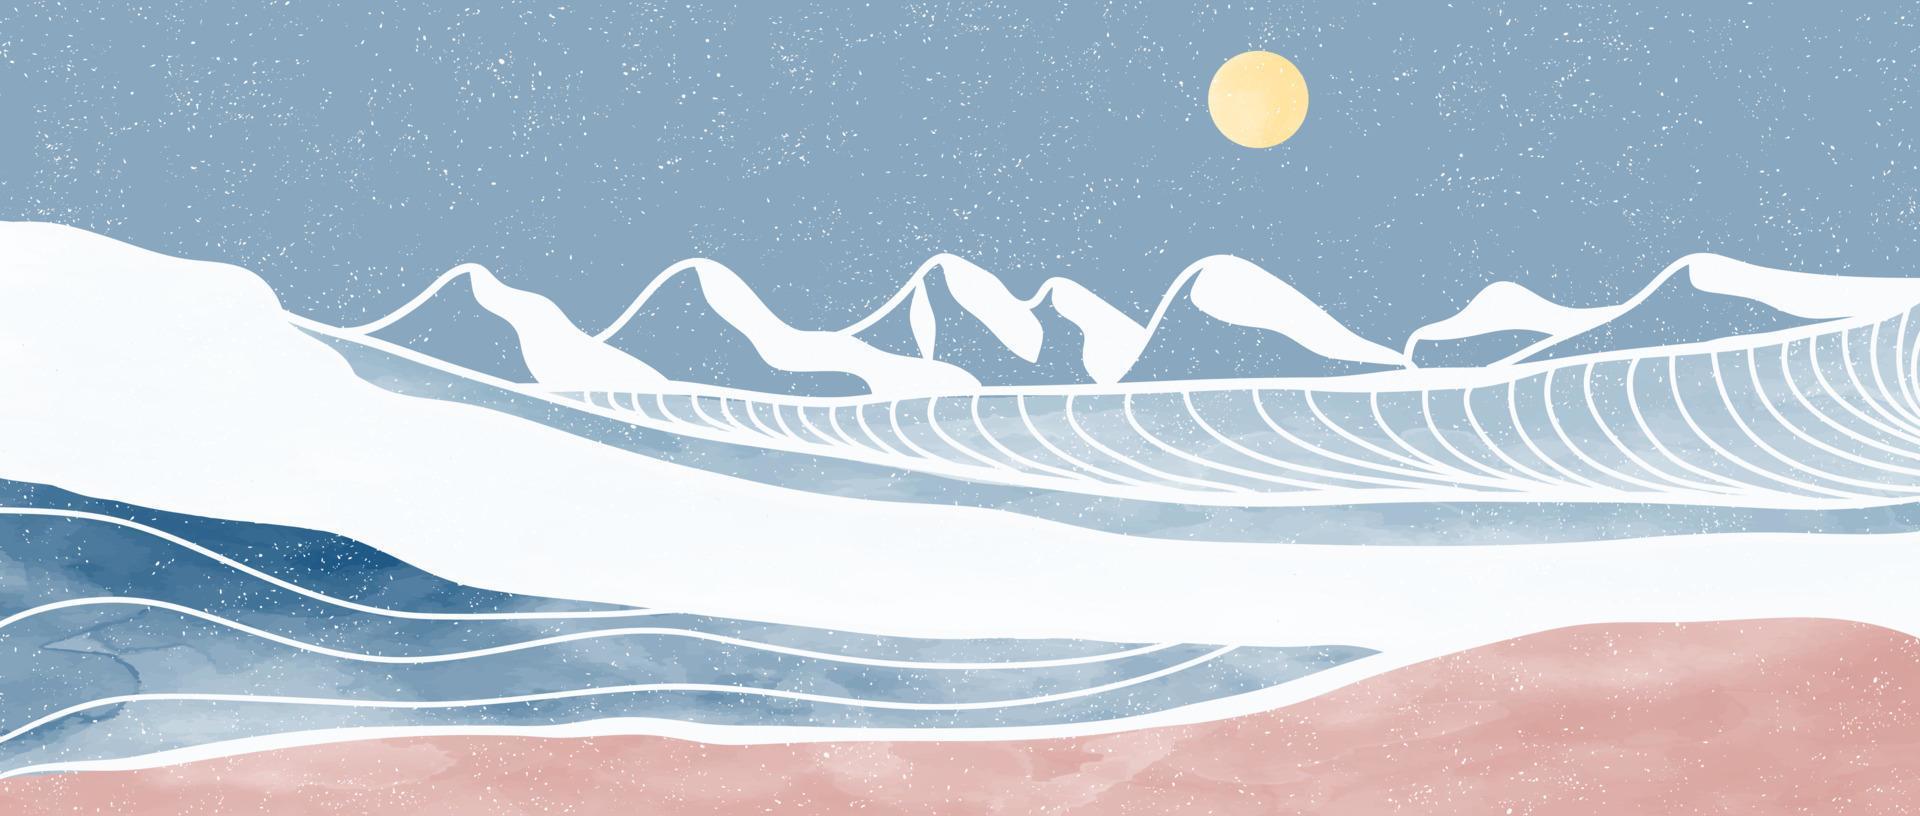 kreativa minimh hav, skyline, våg. vektor illustrationsalist modern färg och linjekonsttryck. abstrakt havsvåg och berg samtida estetiska bakgrunder landskap. kvickhet